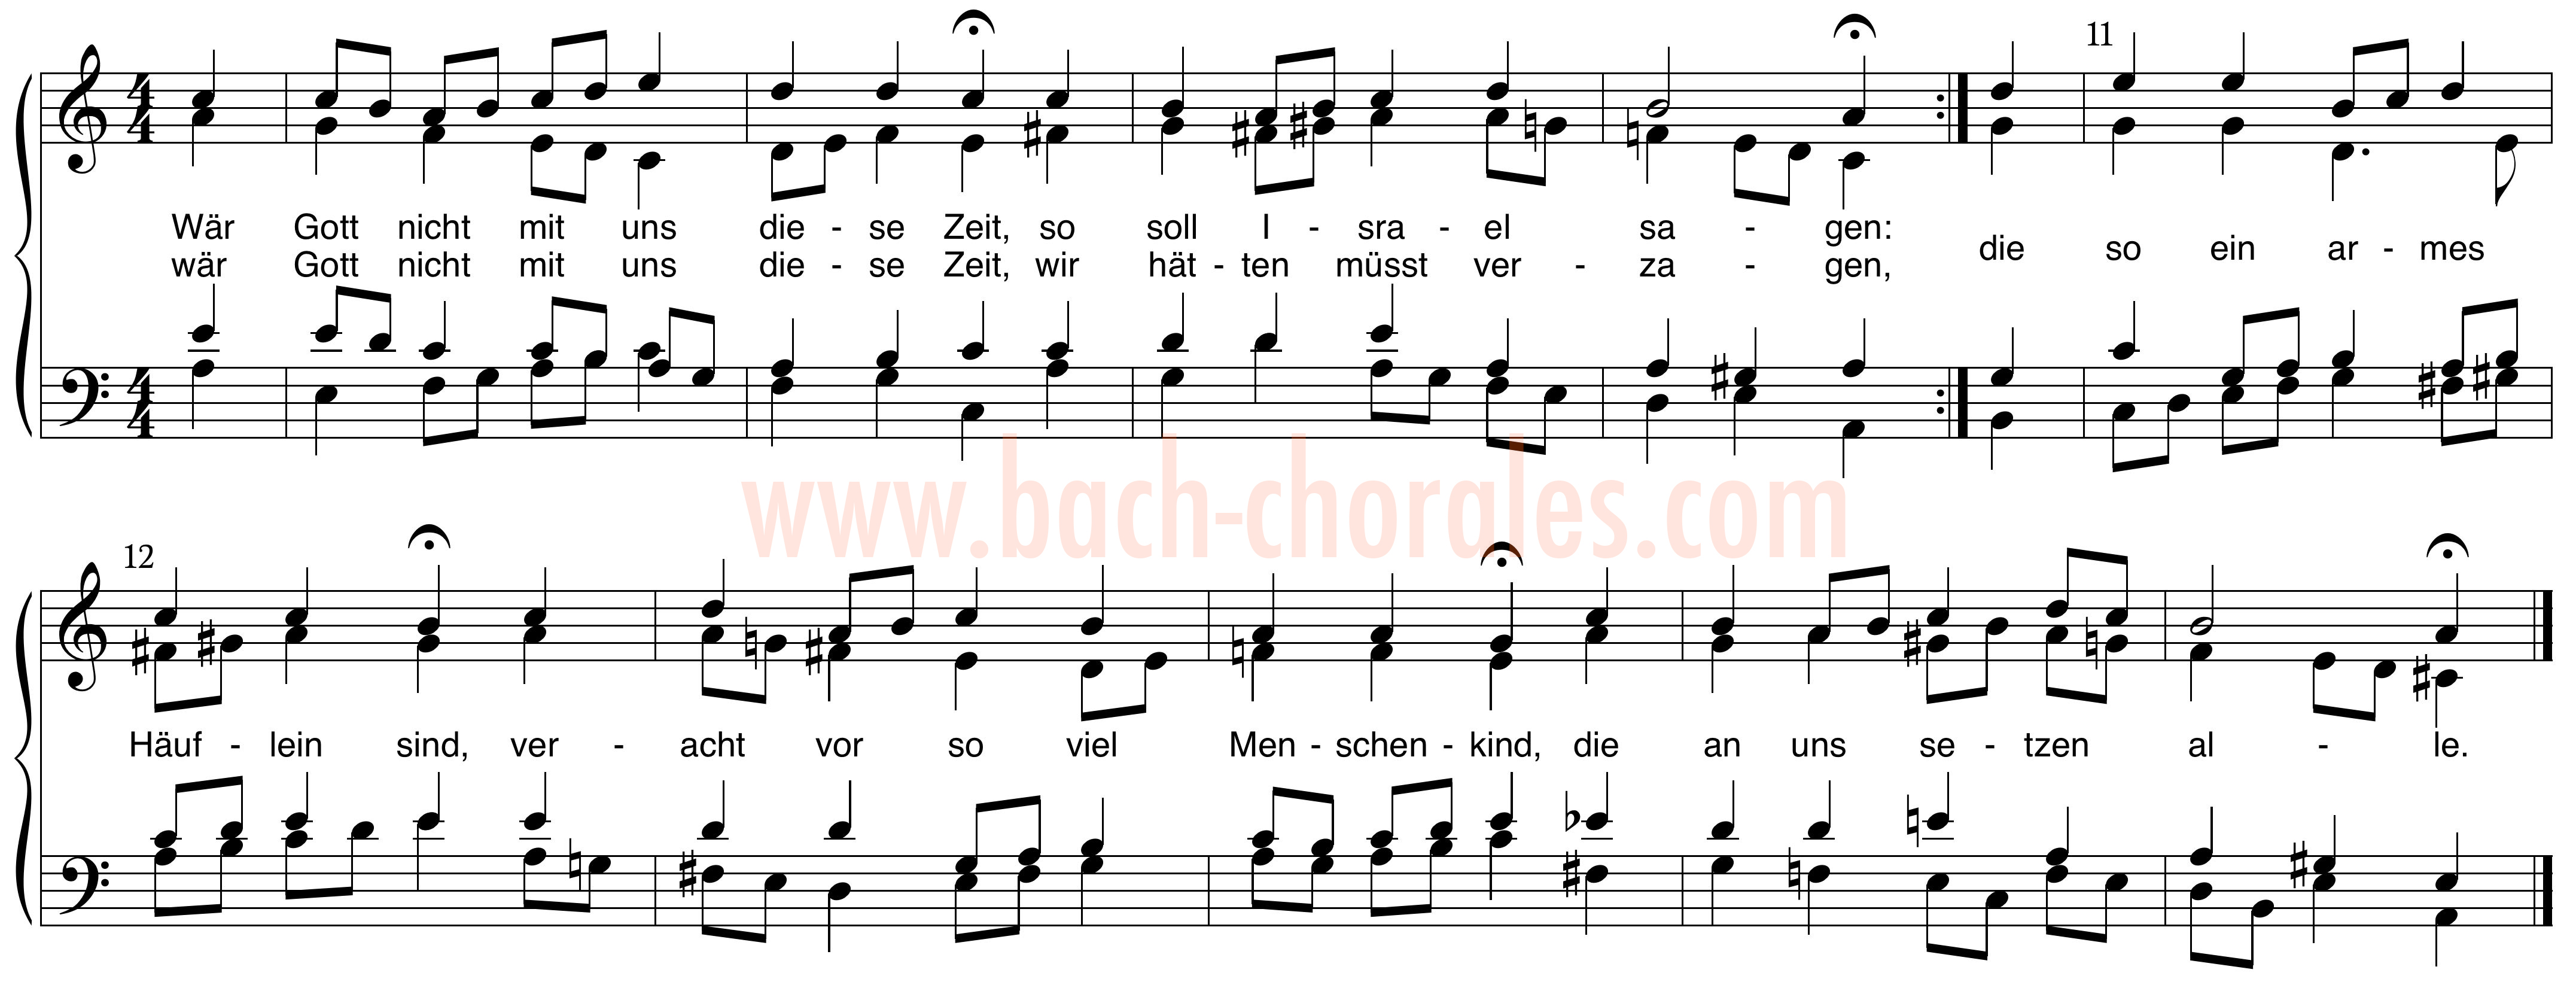 notenbeeld BWV 257 op https://www.bach-chorales.com/